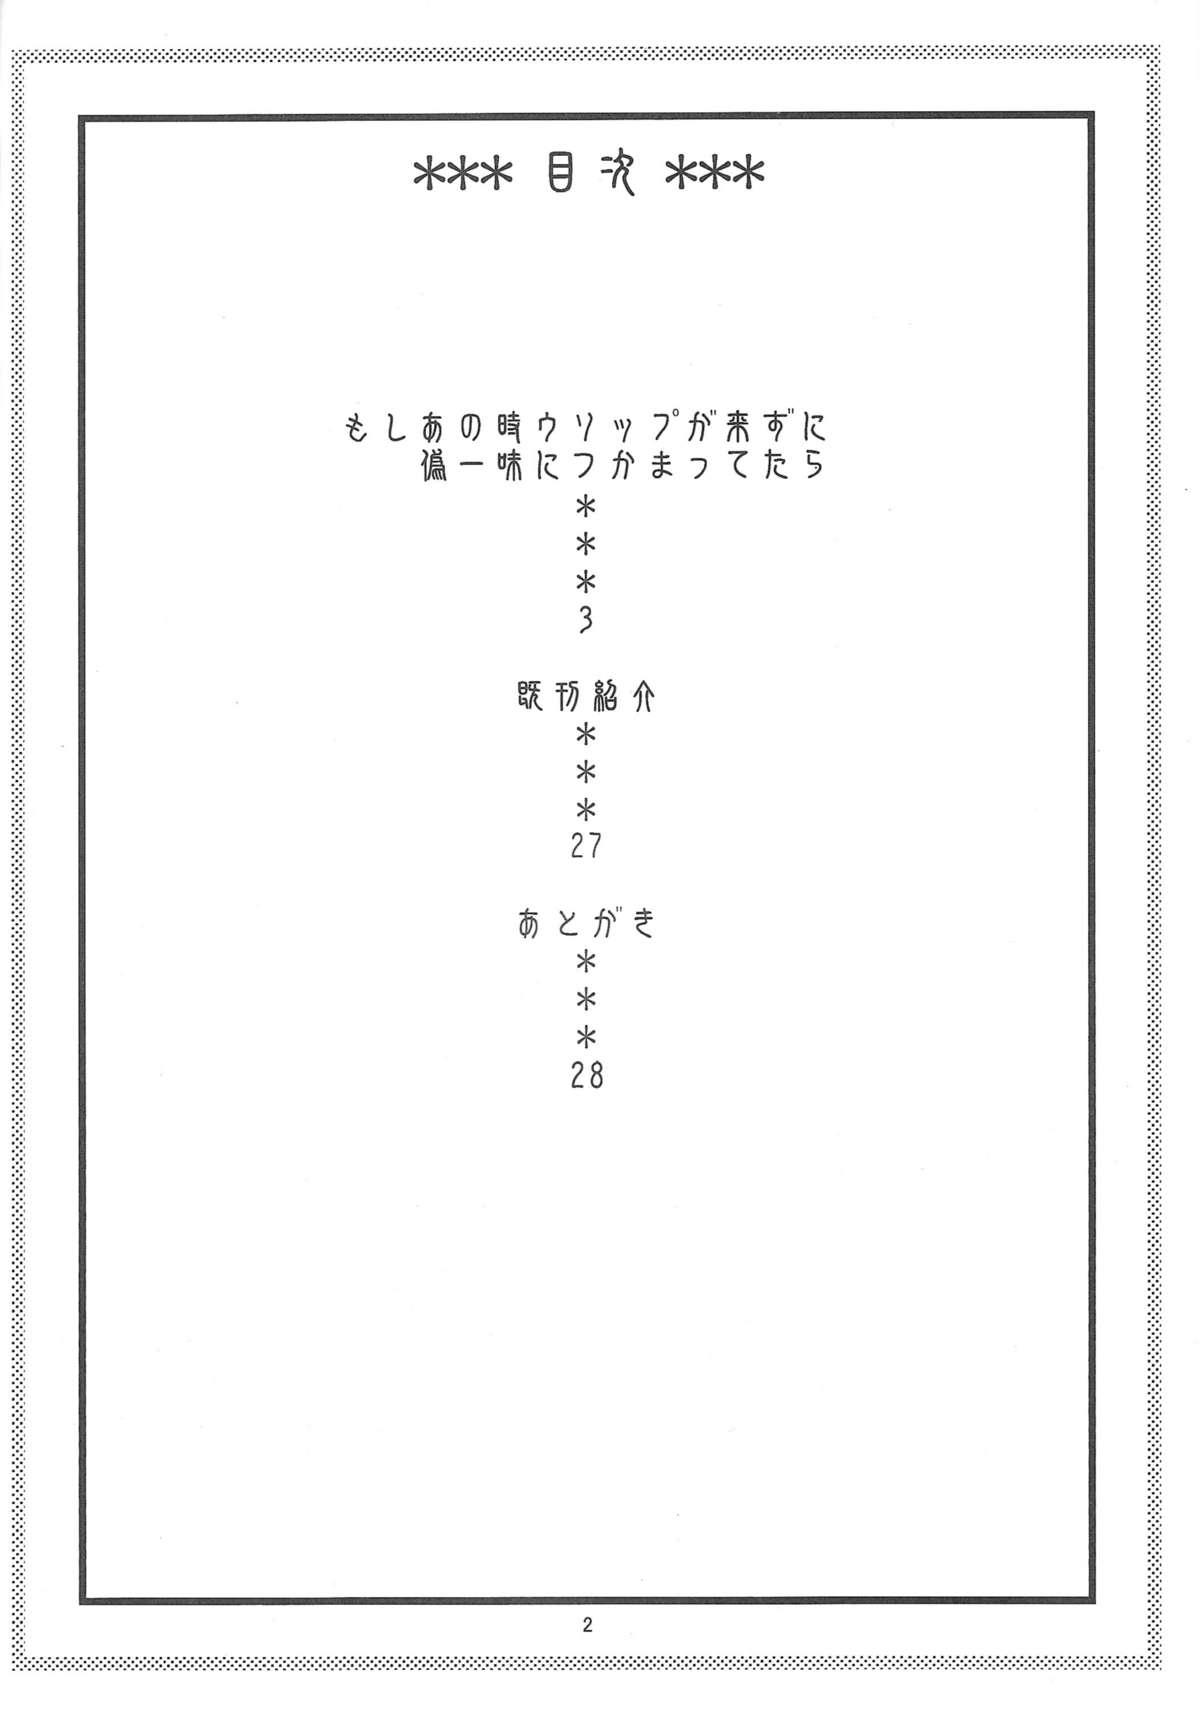 Lolicon Nami no Ura Koukai Nisshi 6 - One piece Amateur Asian - Page 3